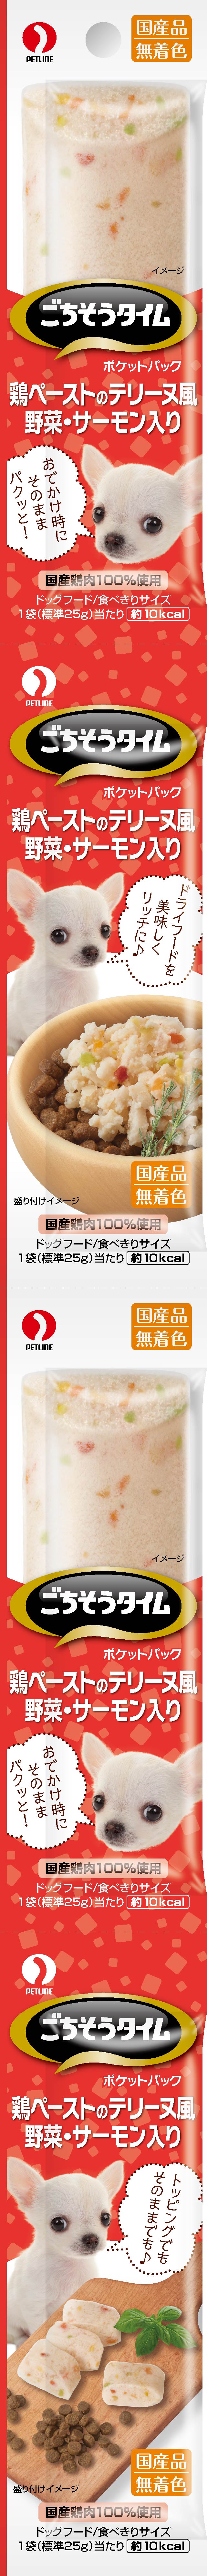 [ペットライン] ごちそうタイム ポケットパック 鶏ペーストのテリーヌ風 野菜・サーモン入り 100g